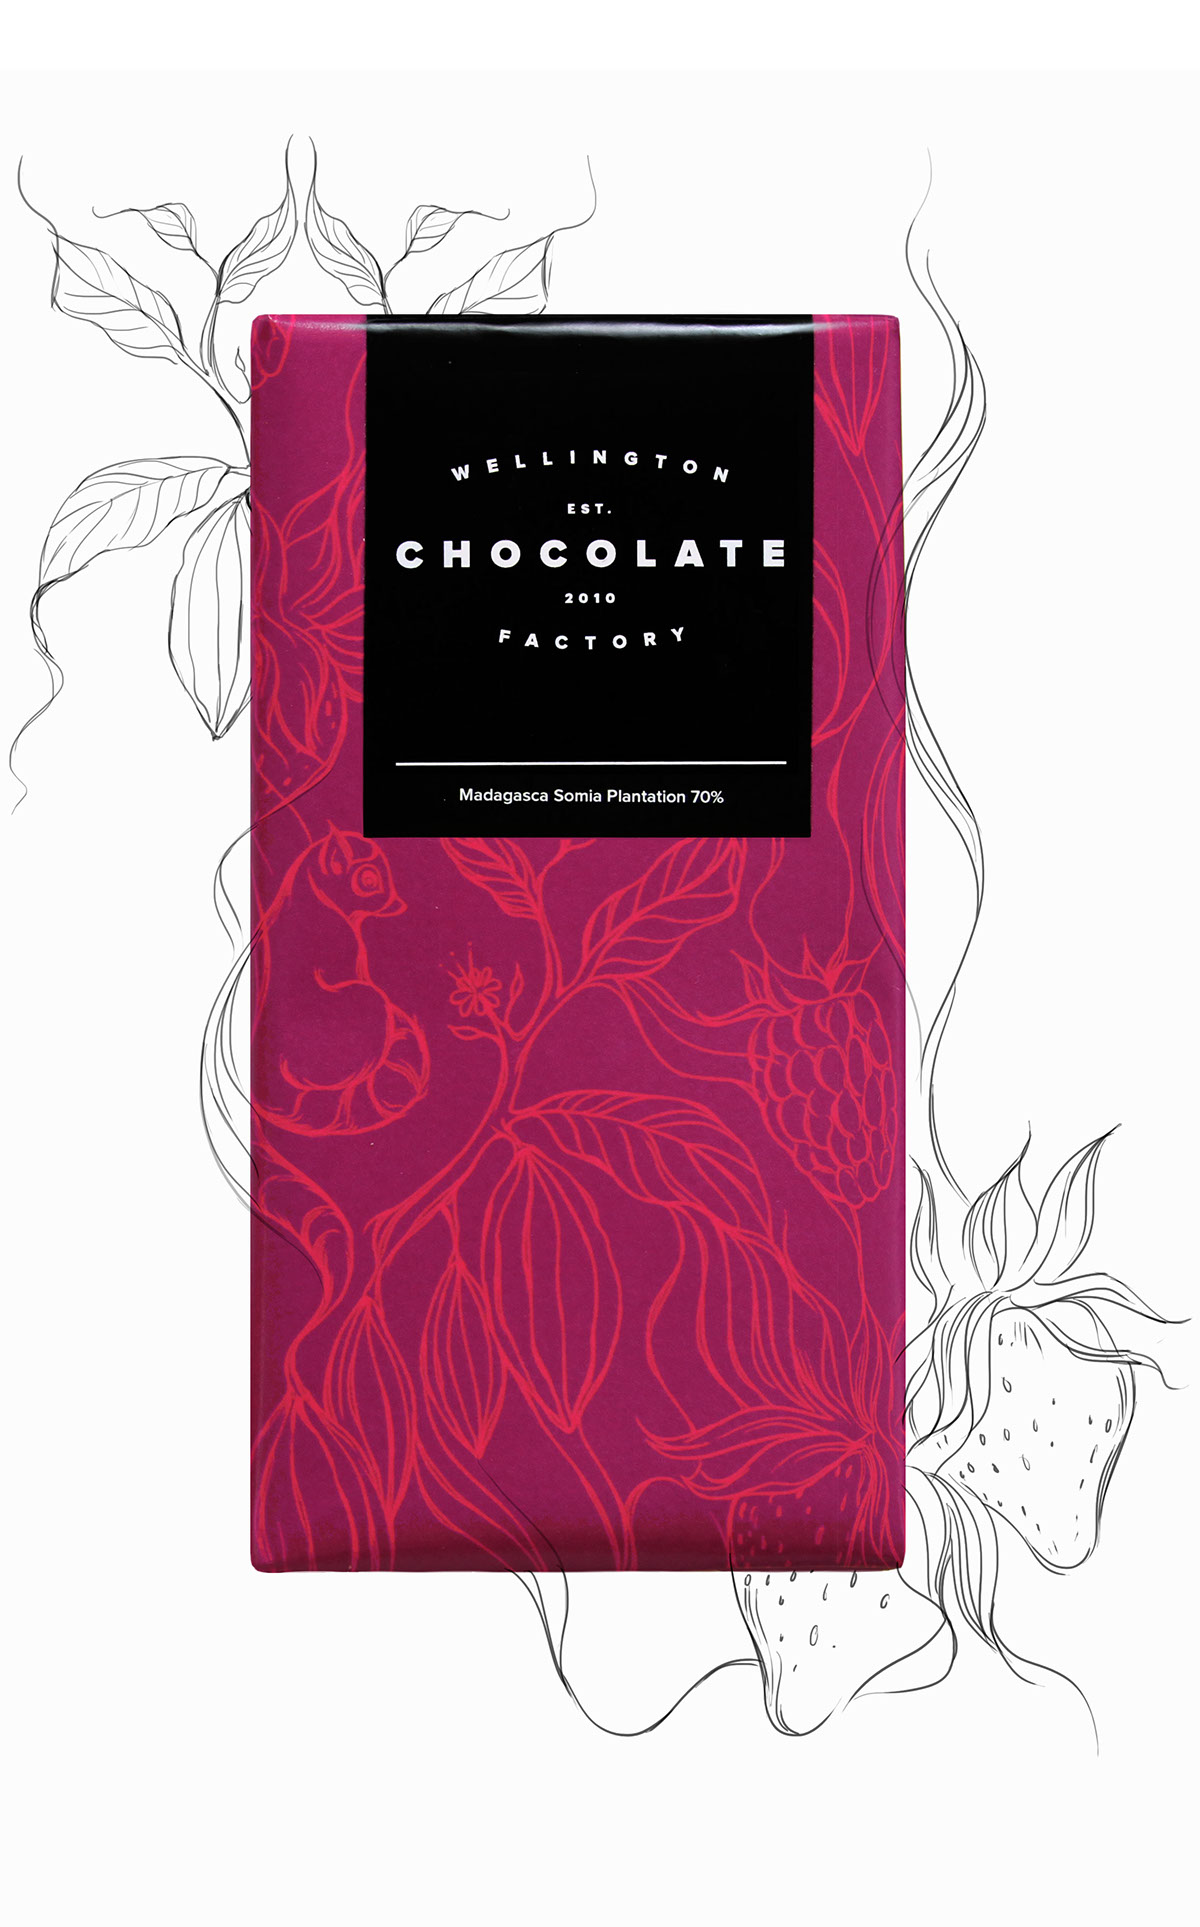 惠灵顿巧克力的巧克力包装设计。(图5)